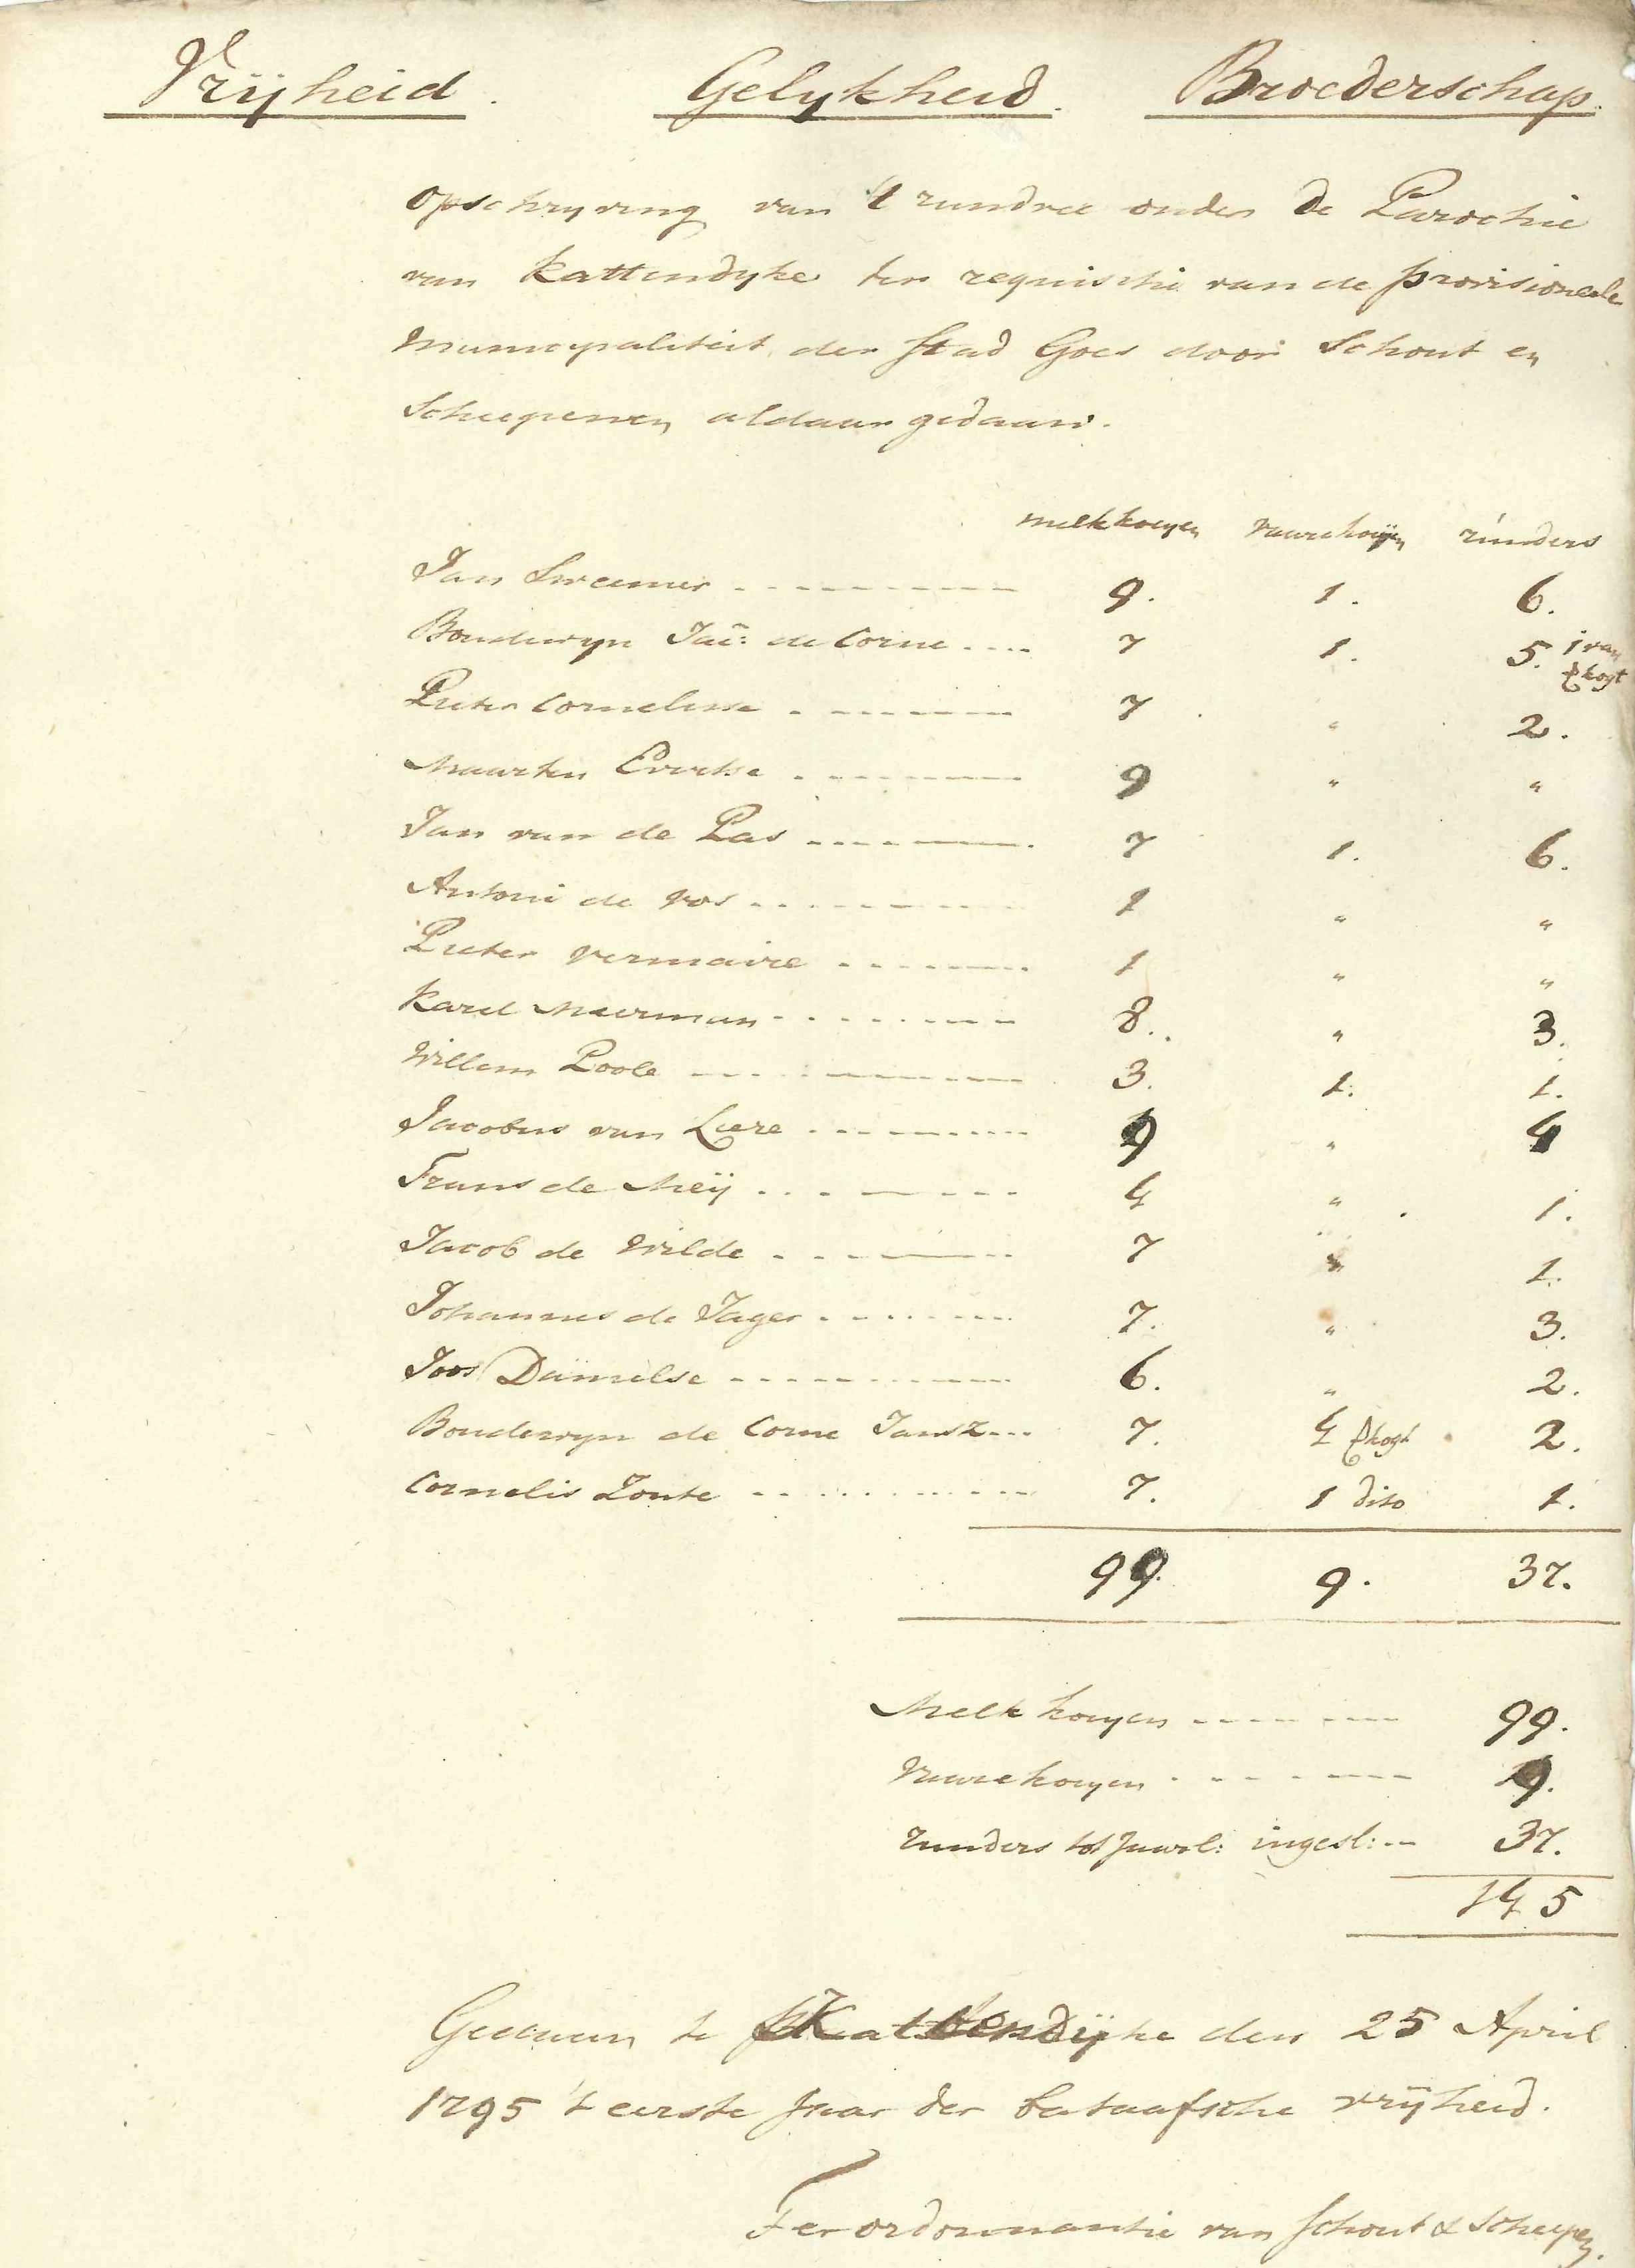 Inventarisatie van koeien te Kattendijke, 1795.